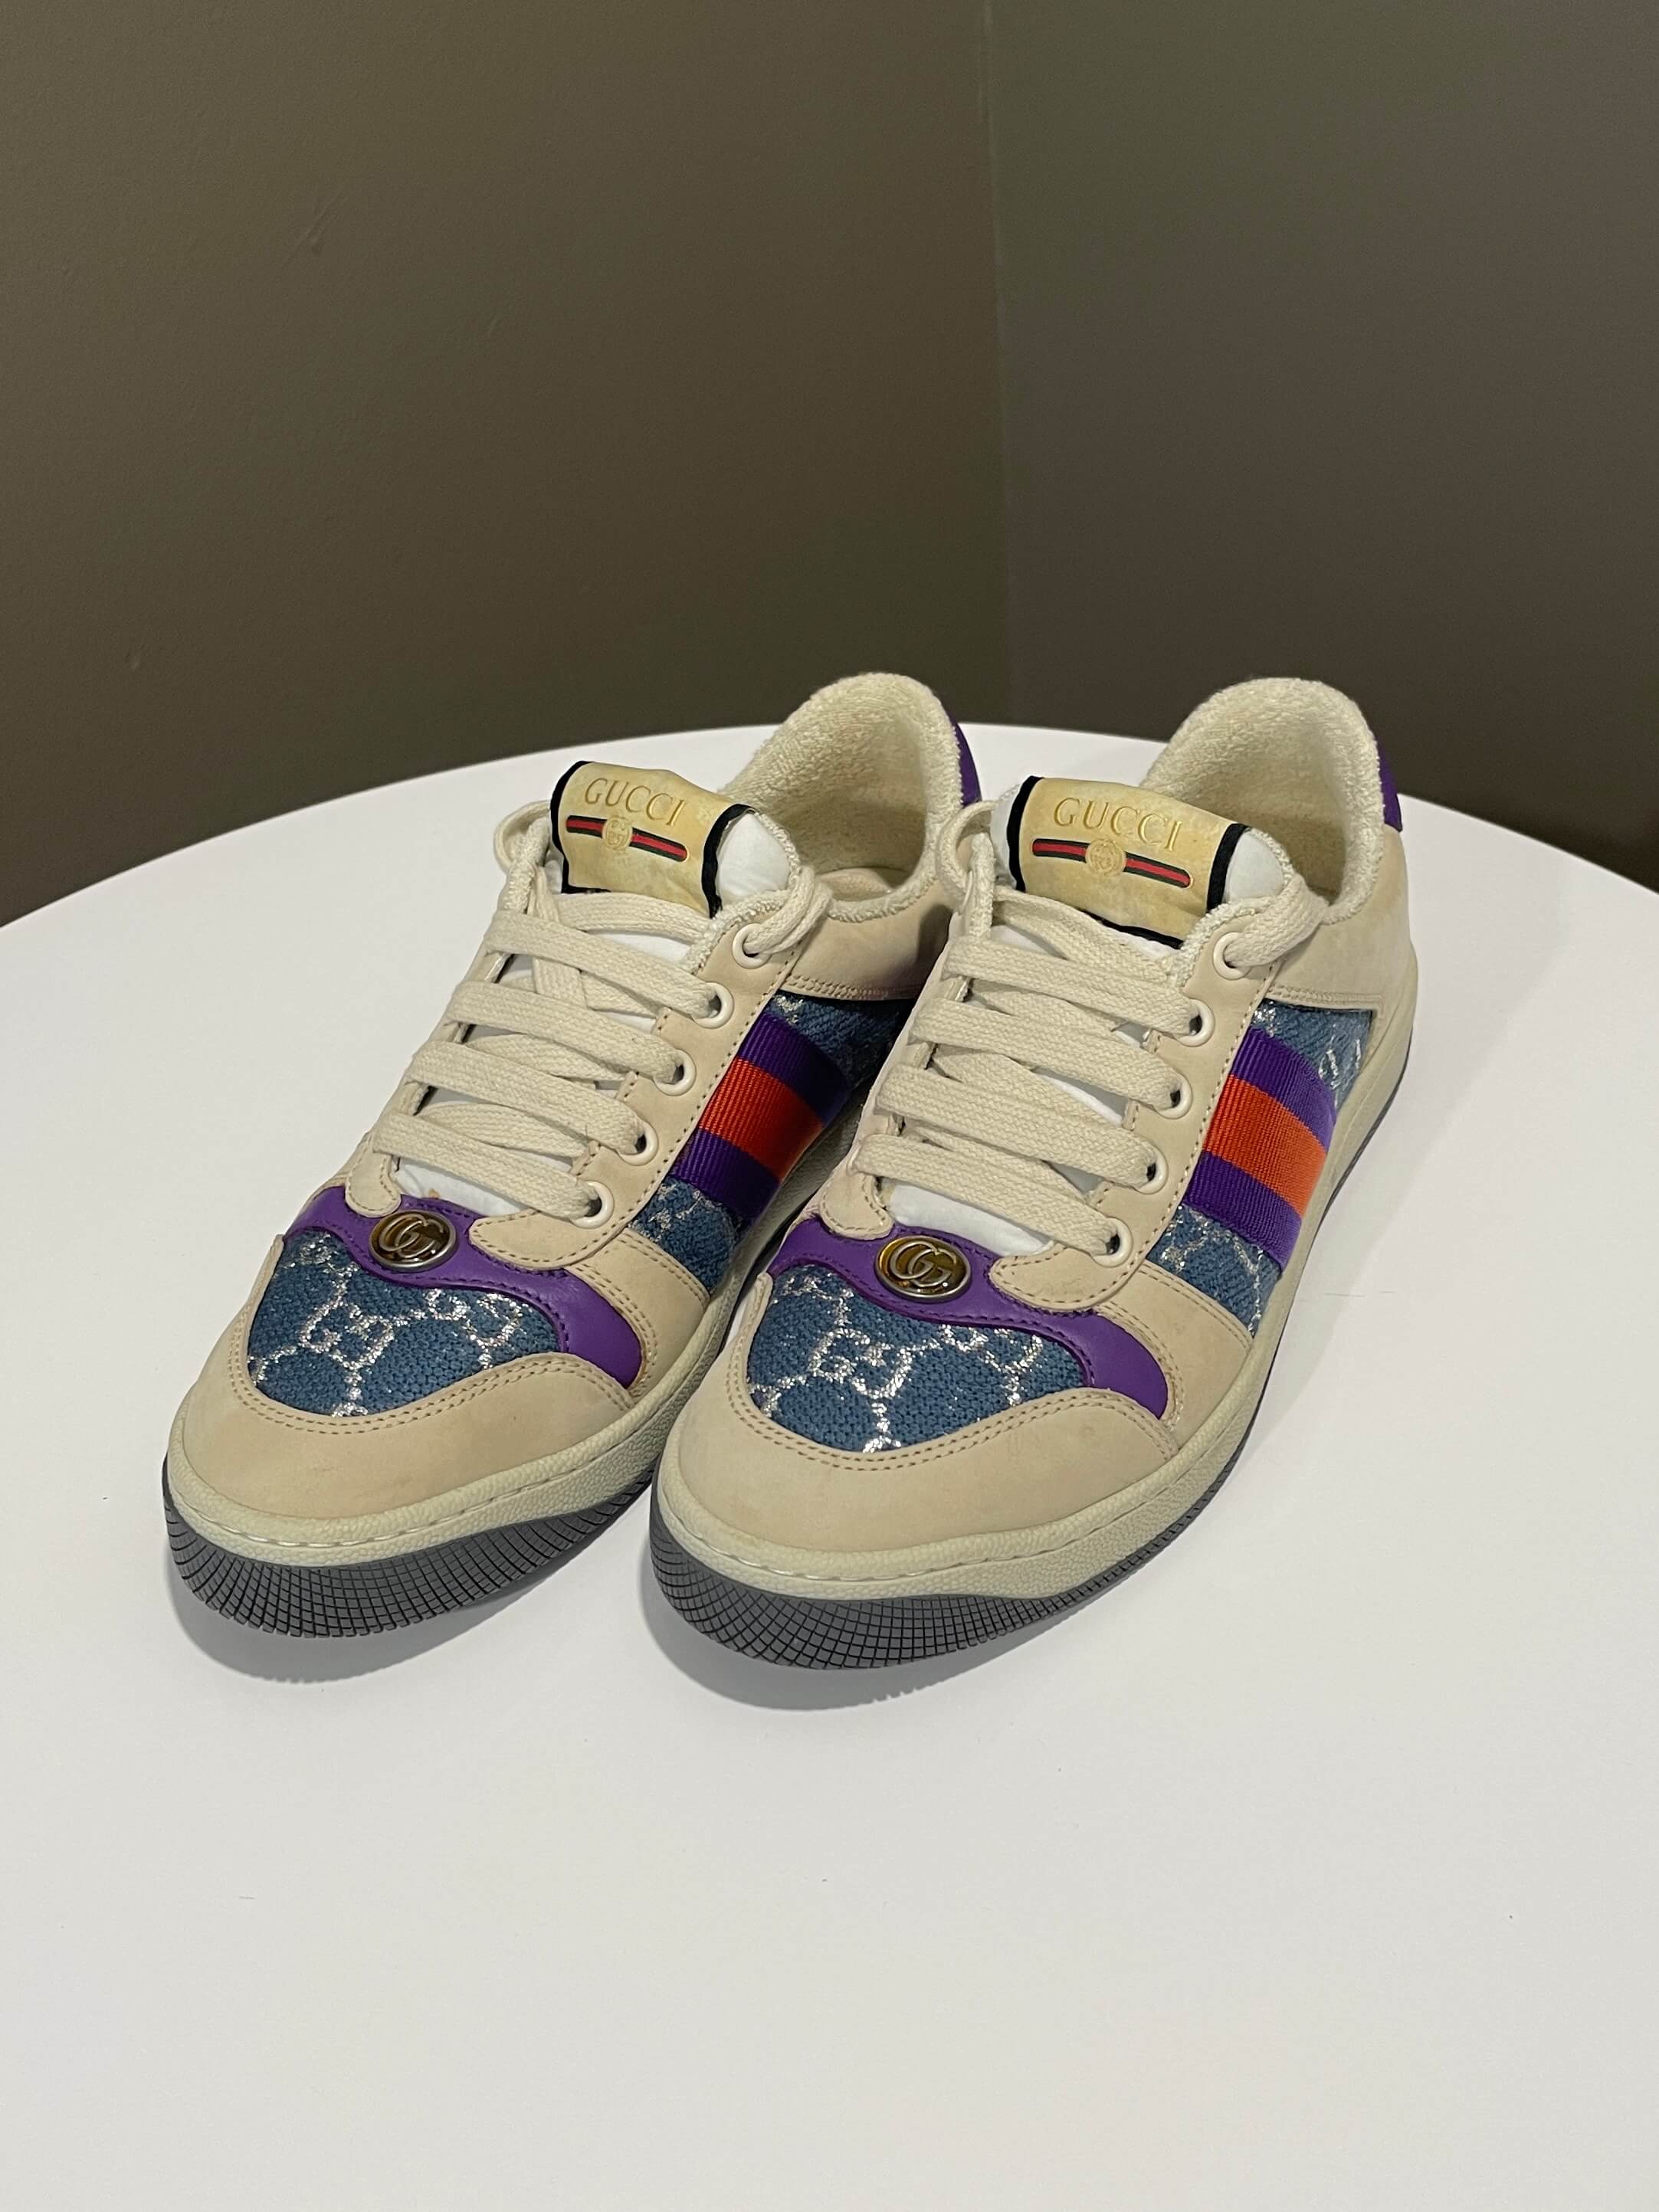 Gucci Screener Sneaker Multicolor Size 36.5 